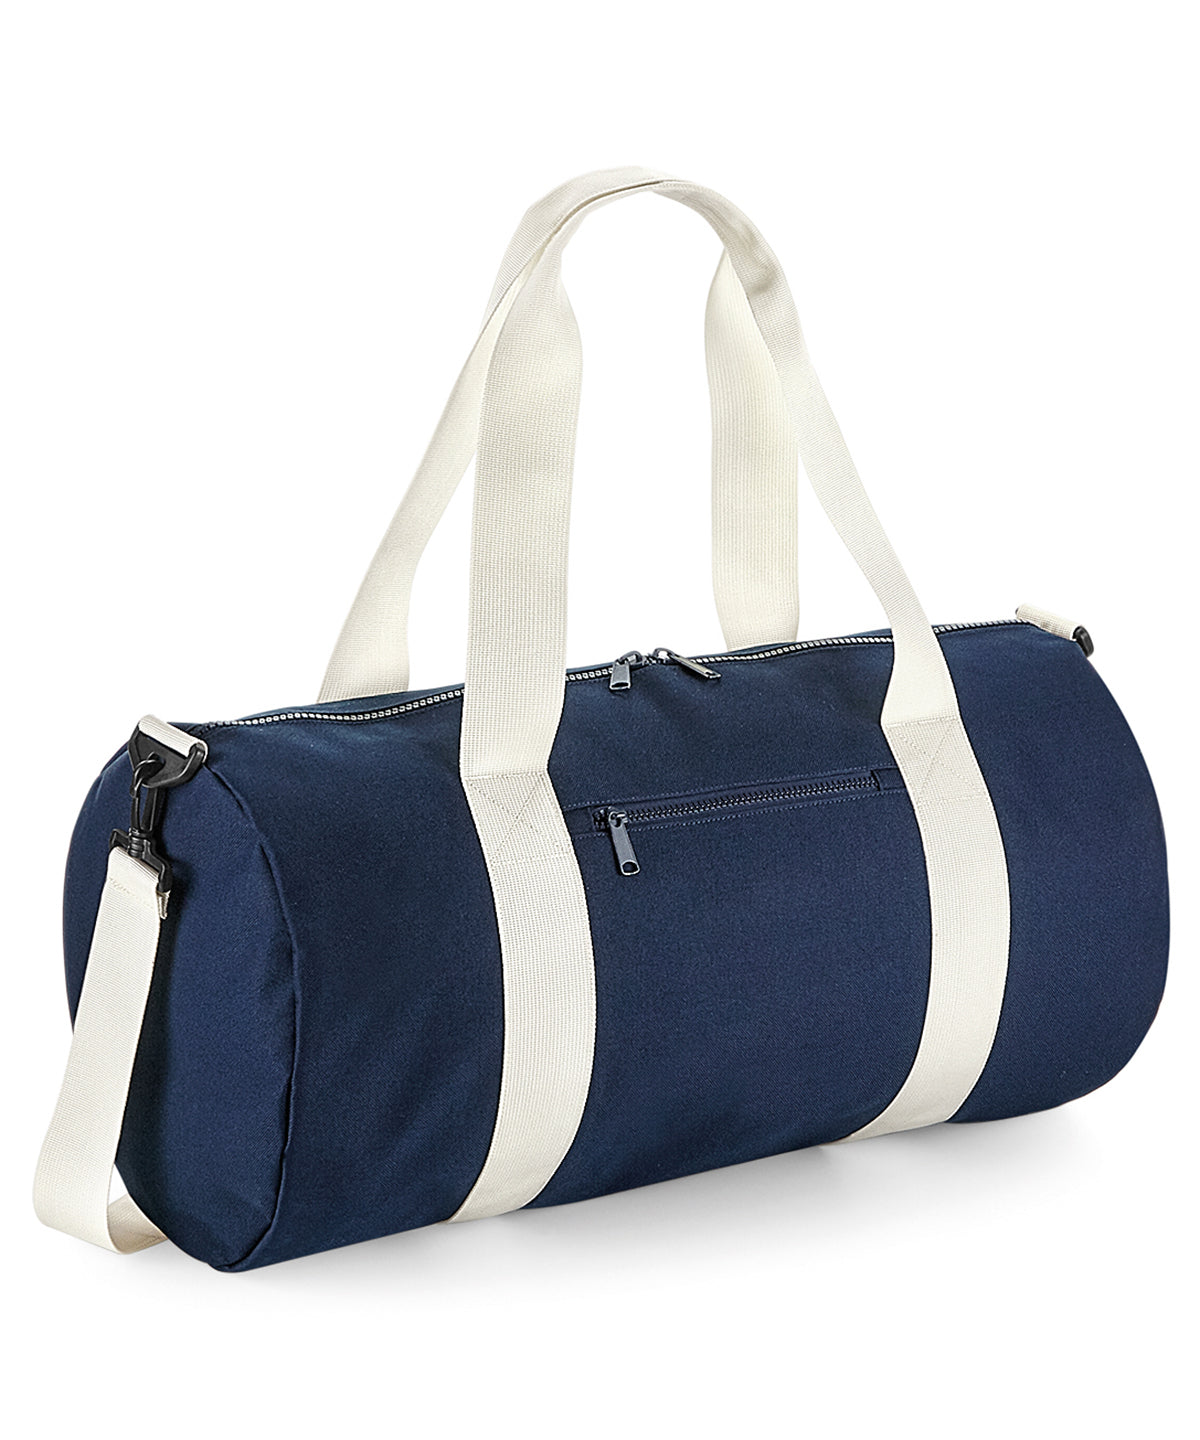 Personalised Bags - Navy Bagbase Original barrel bag XL